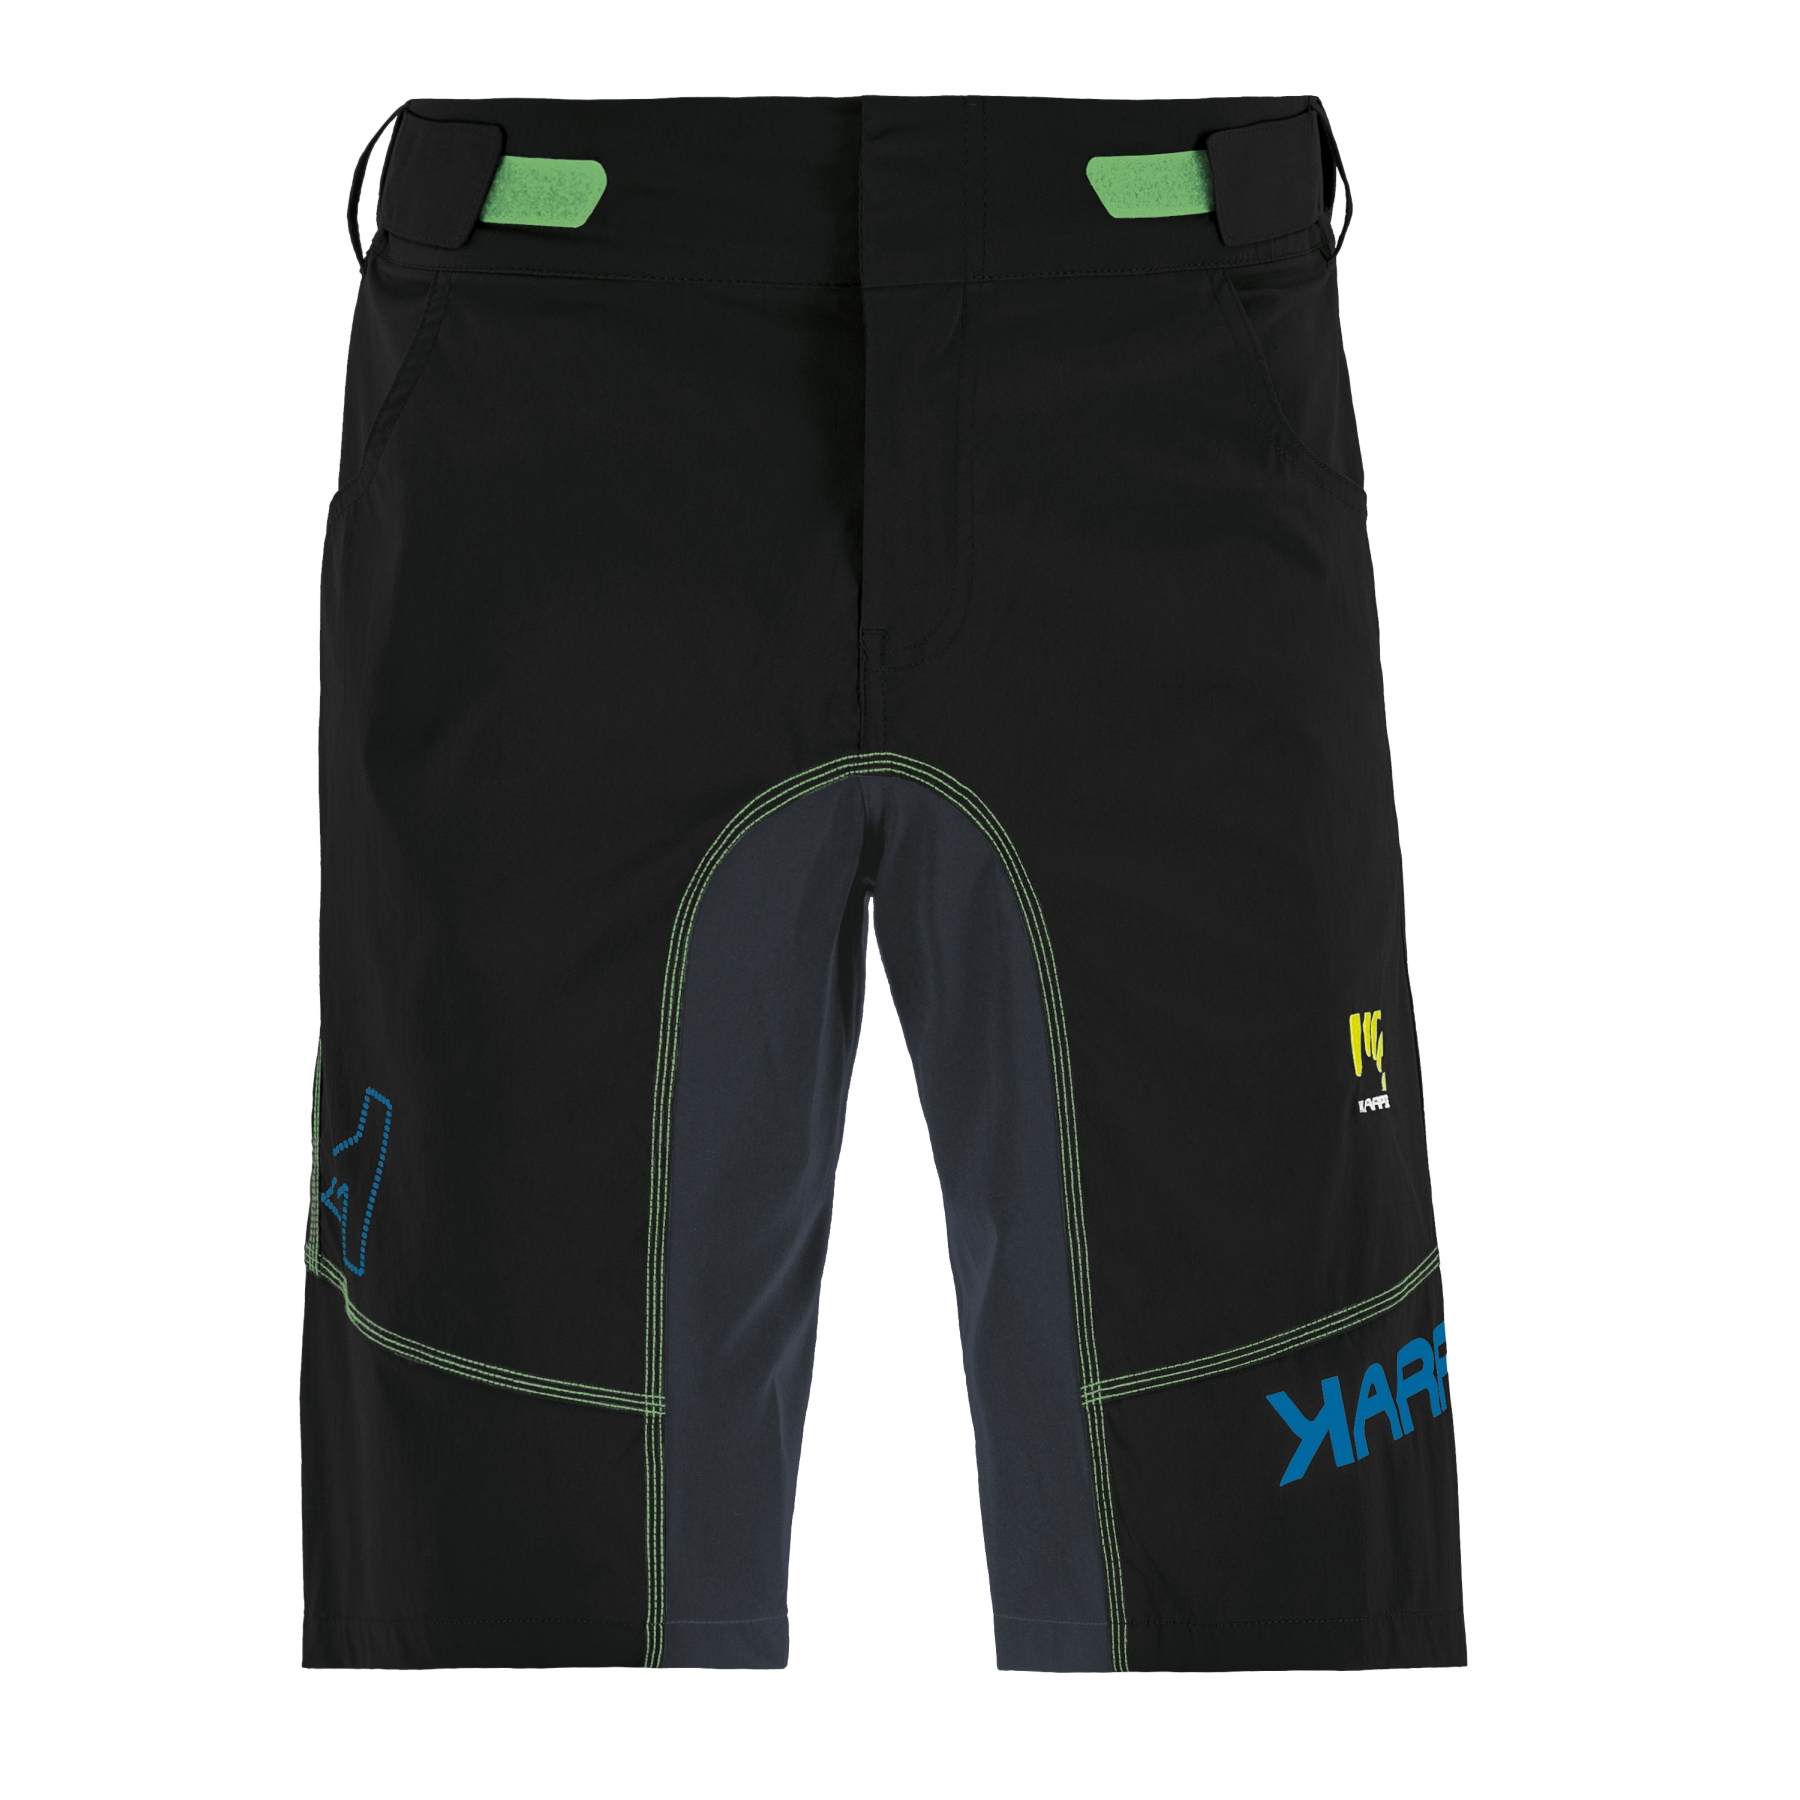 Produktbild von Karpos Ballistic Evo Shorts - black/ombre blue/green fluo